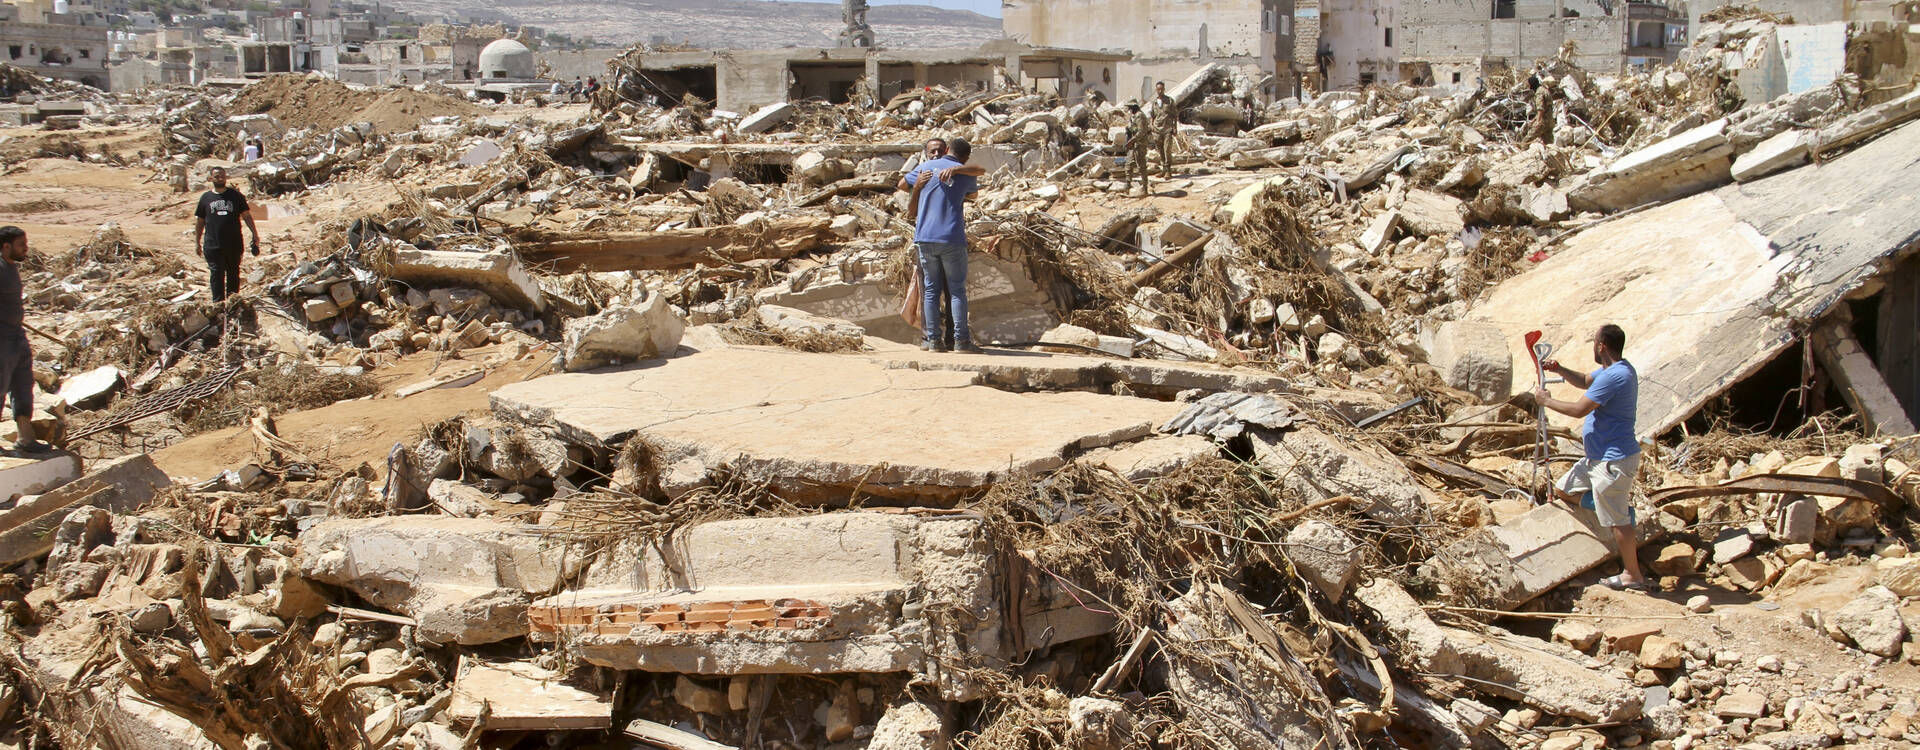 Trümmerberge nach Überschwemmungen in Libyen.